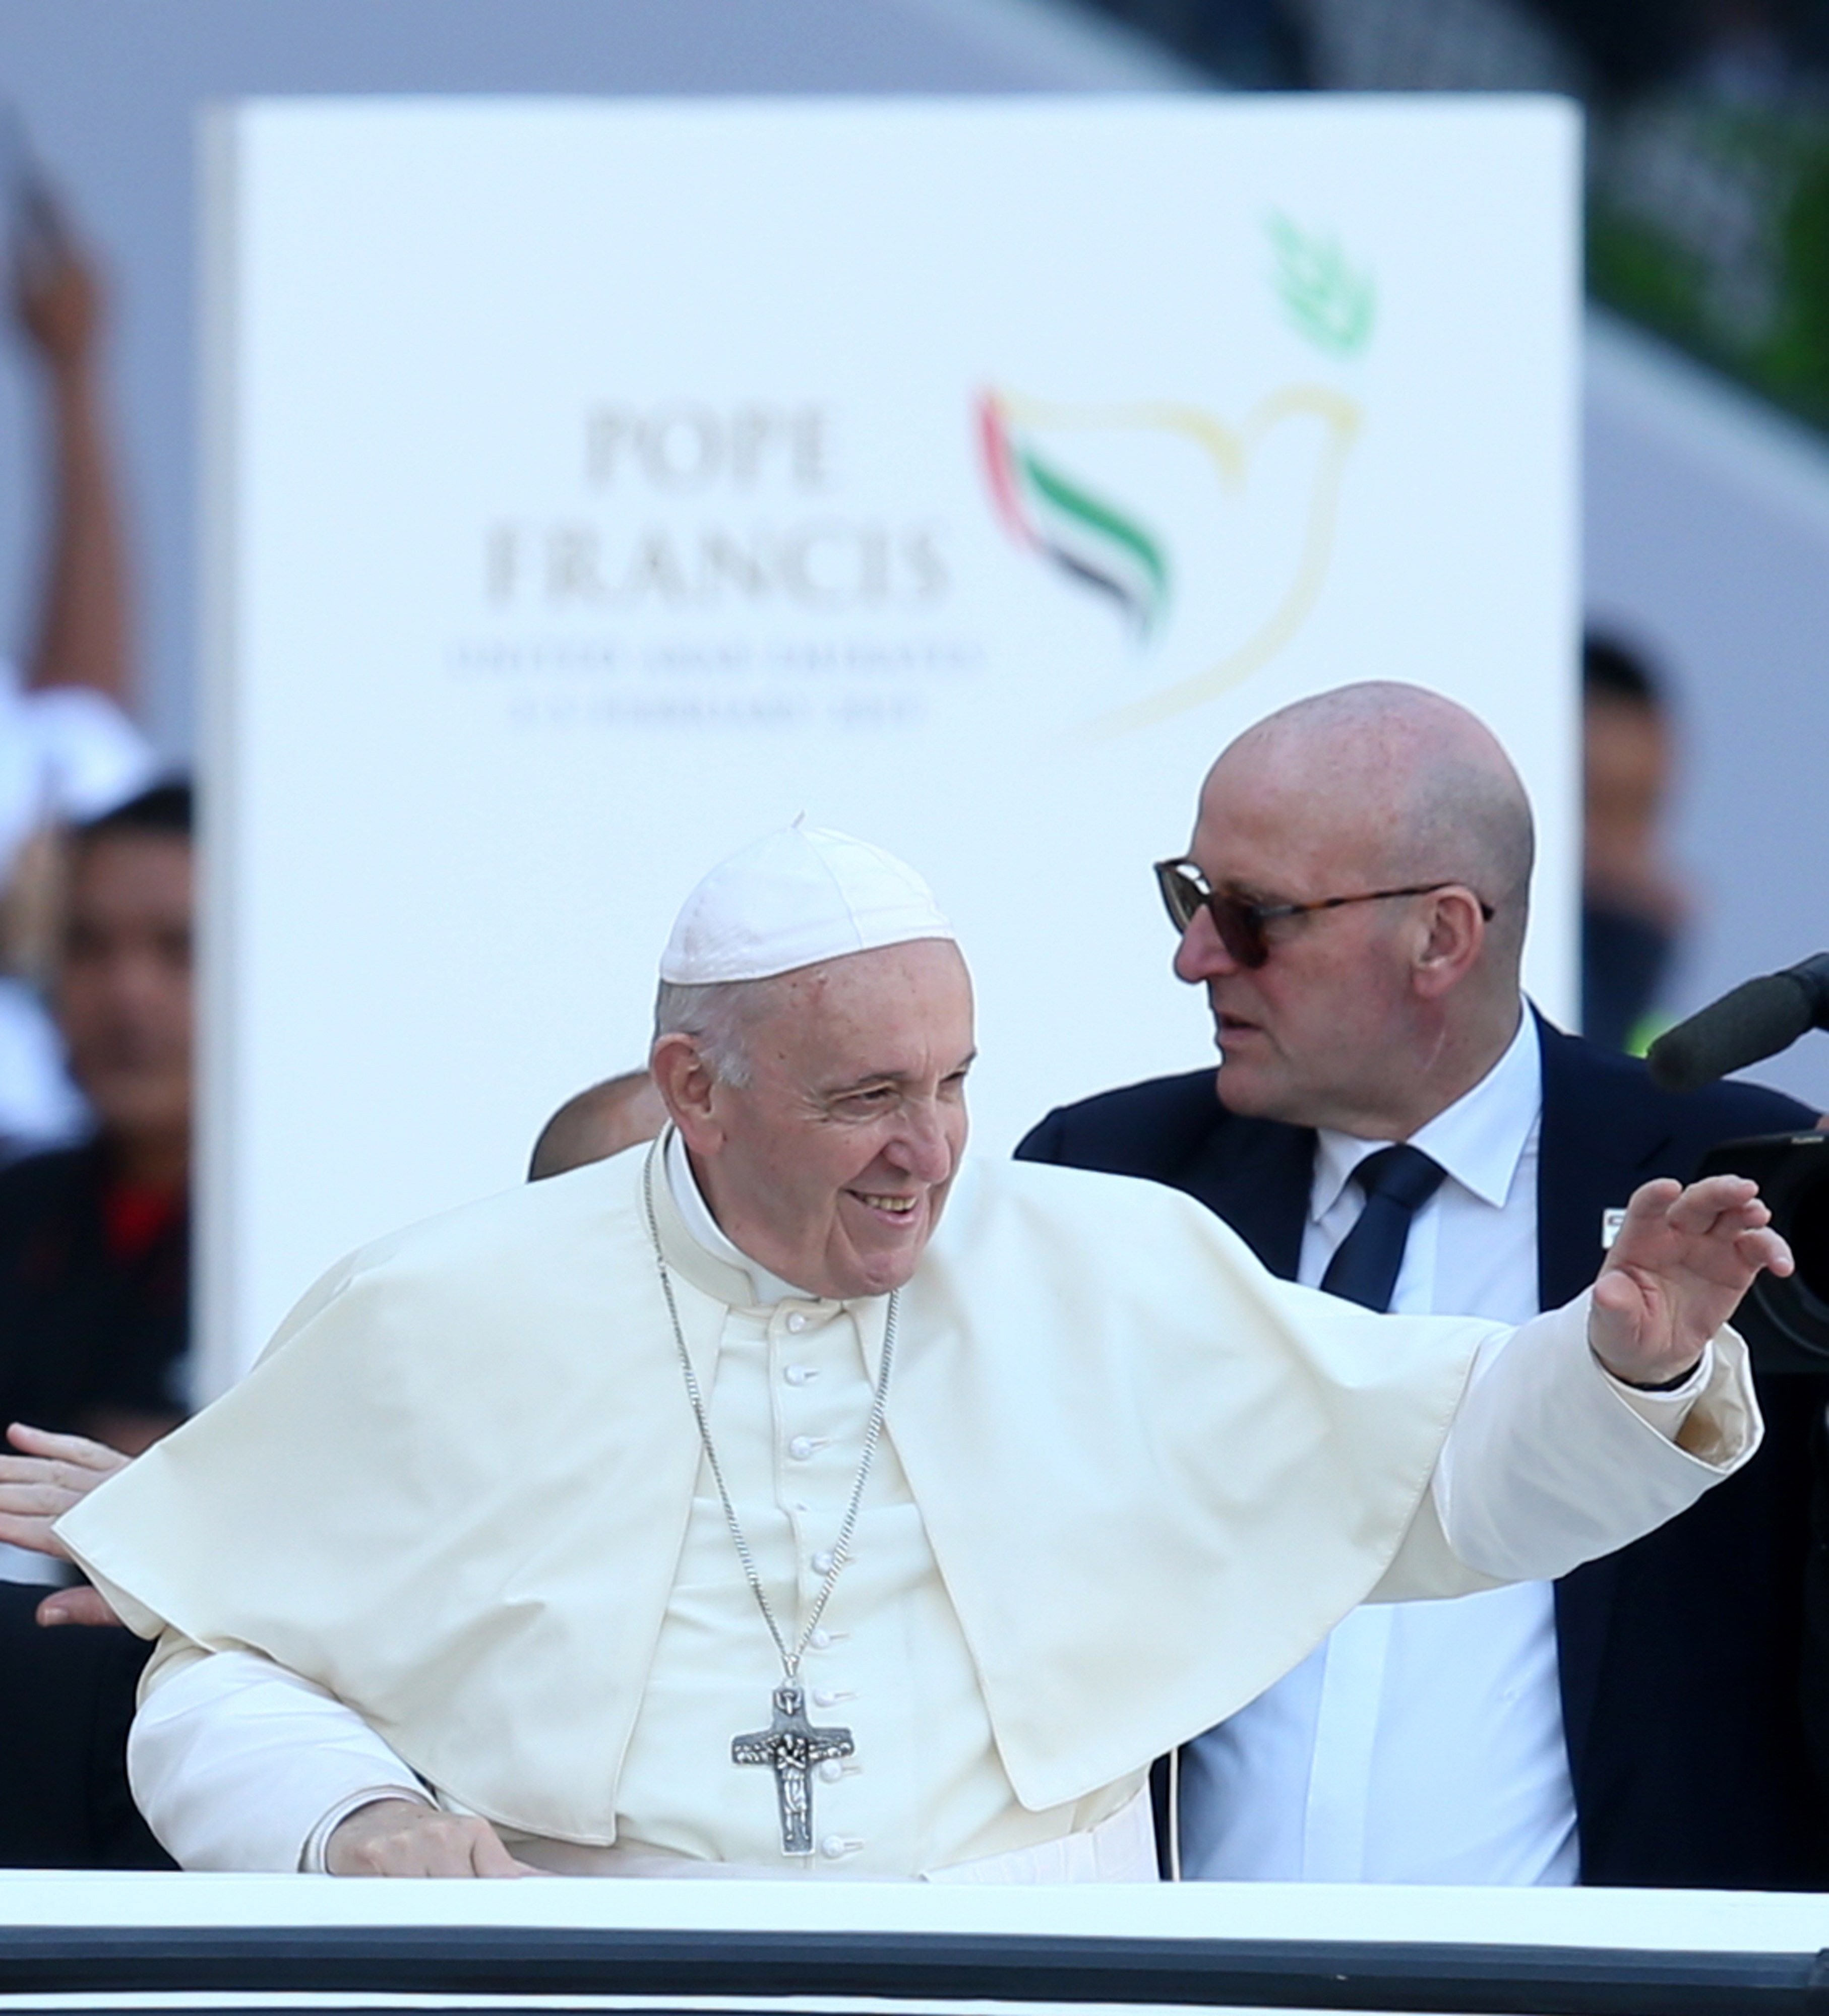 El Papa reforça les lleis per prevenir abusos sexuals a menors al Vaticà